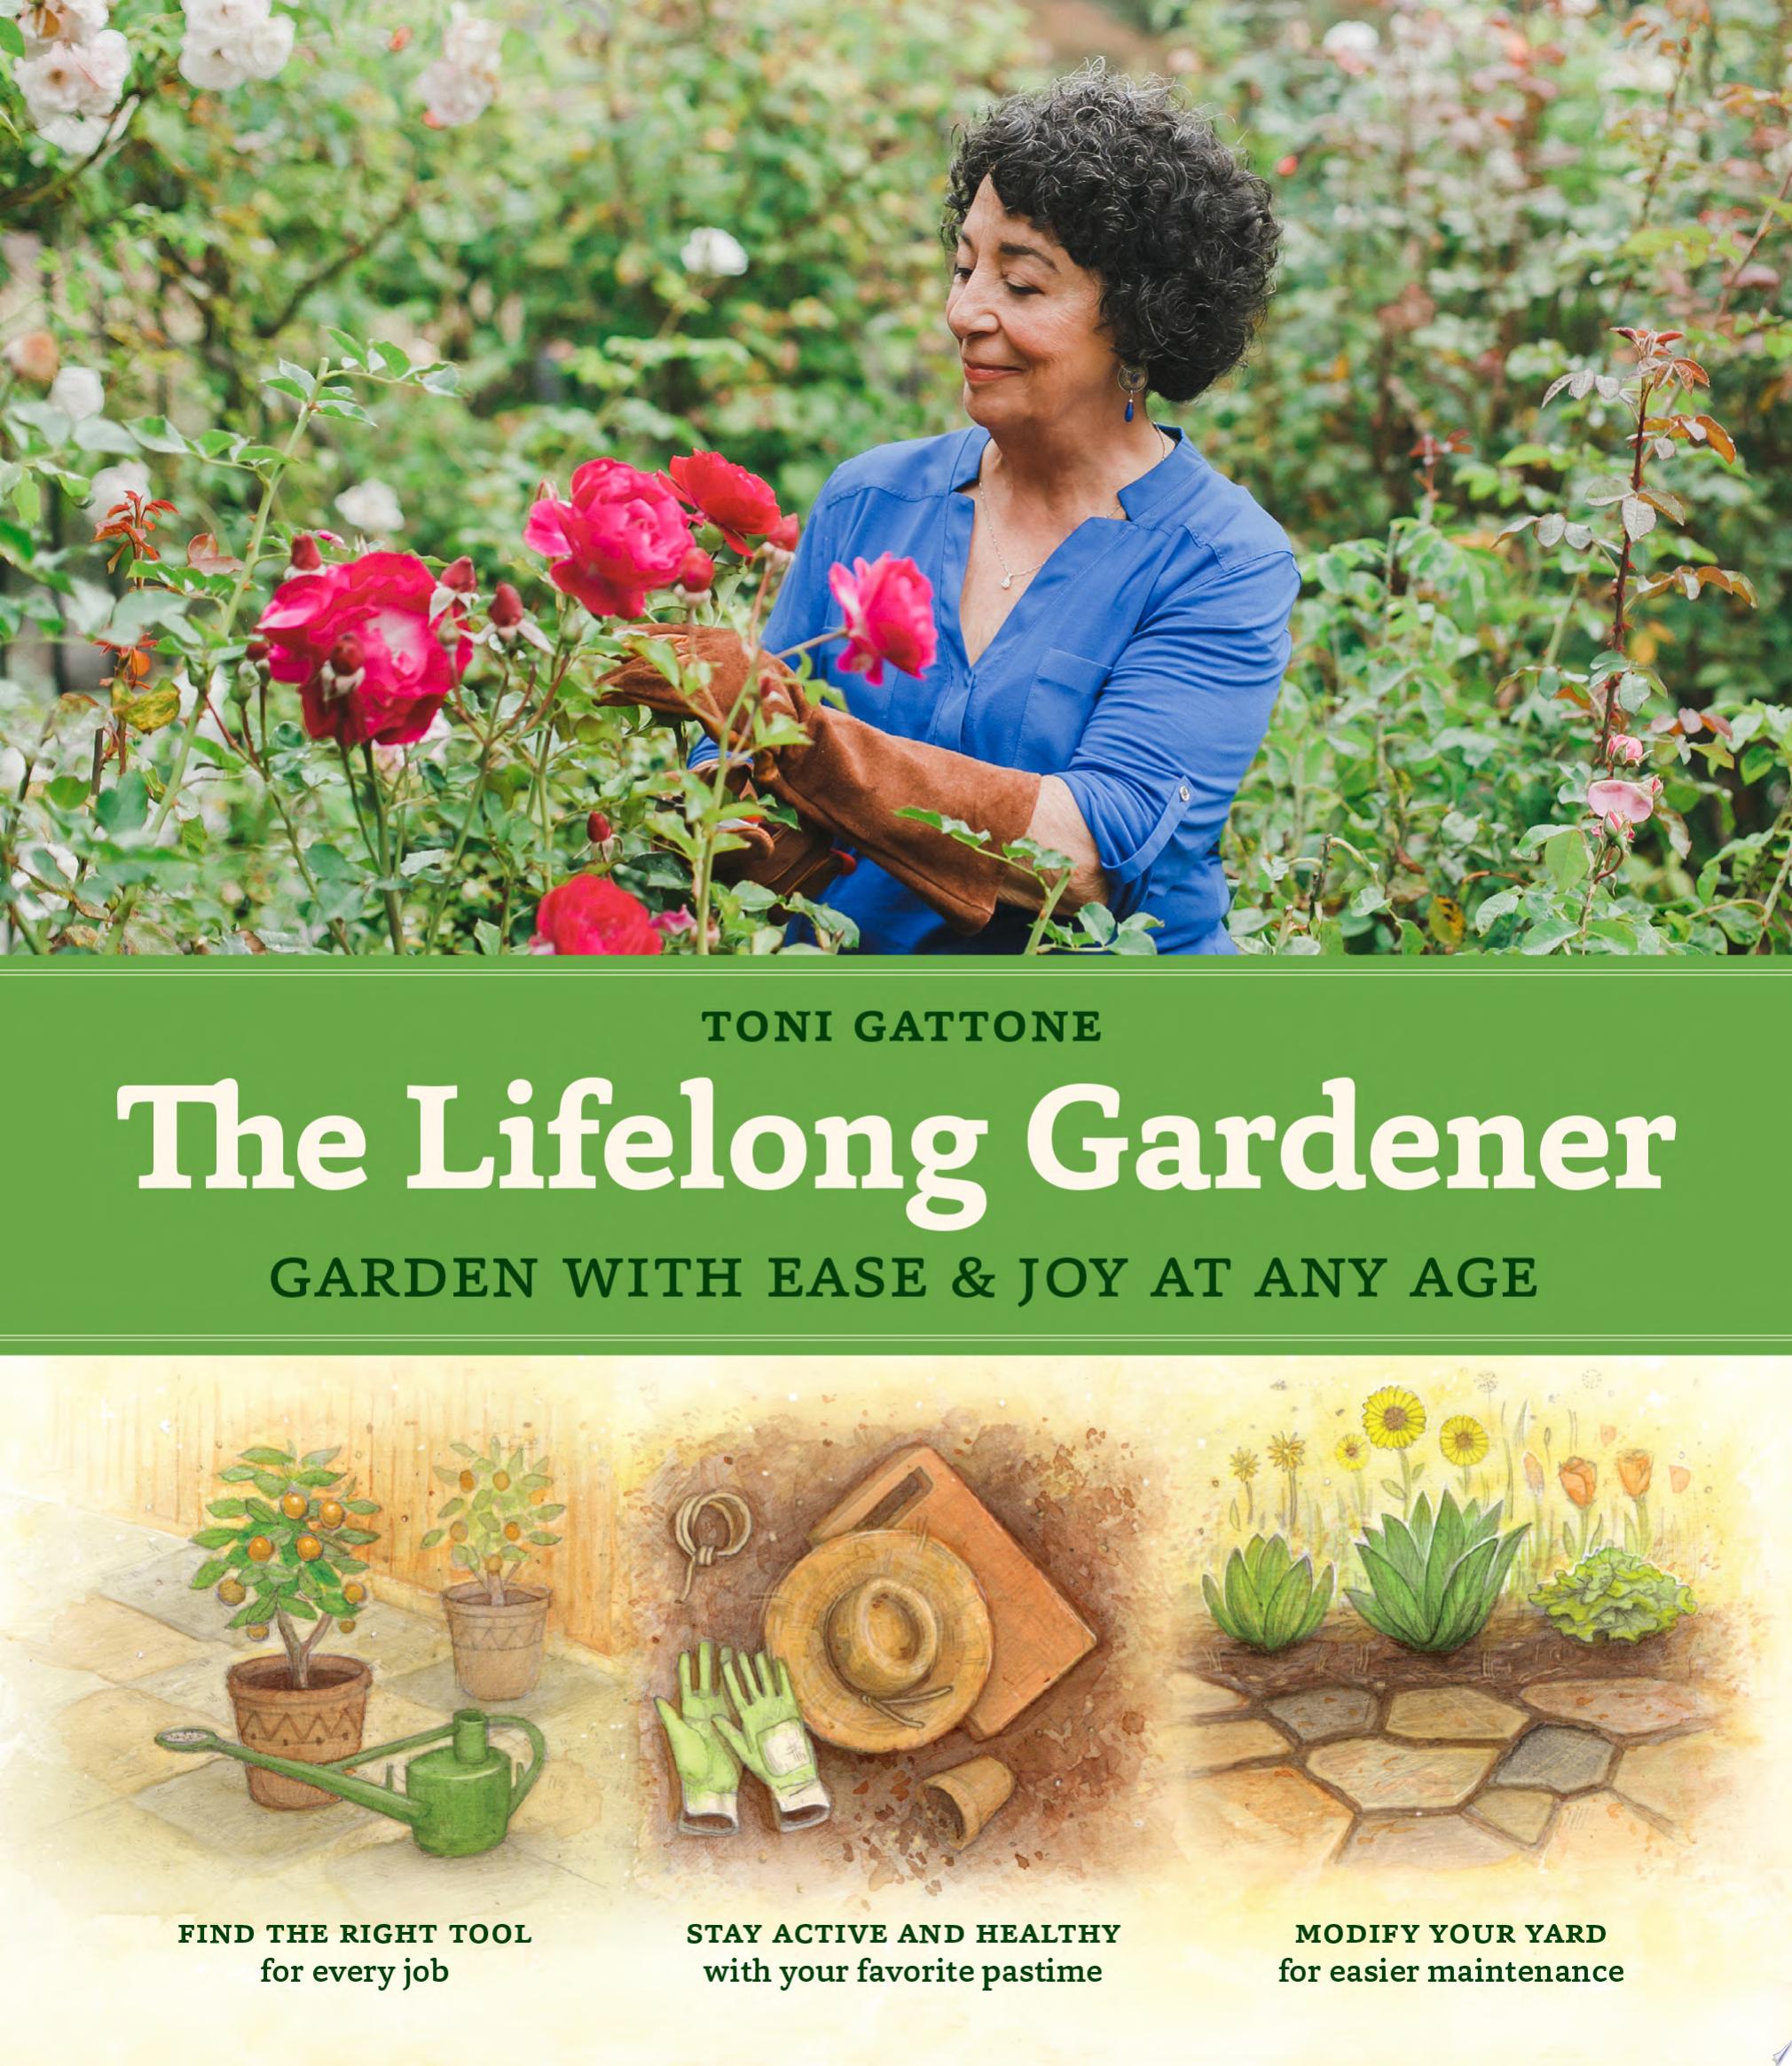 Image for "The Lifelong Gardener"